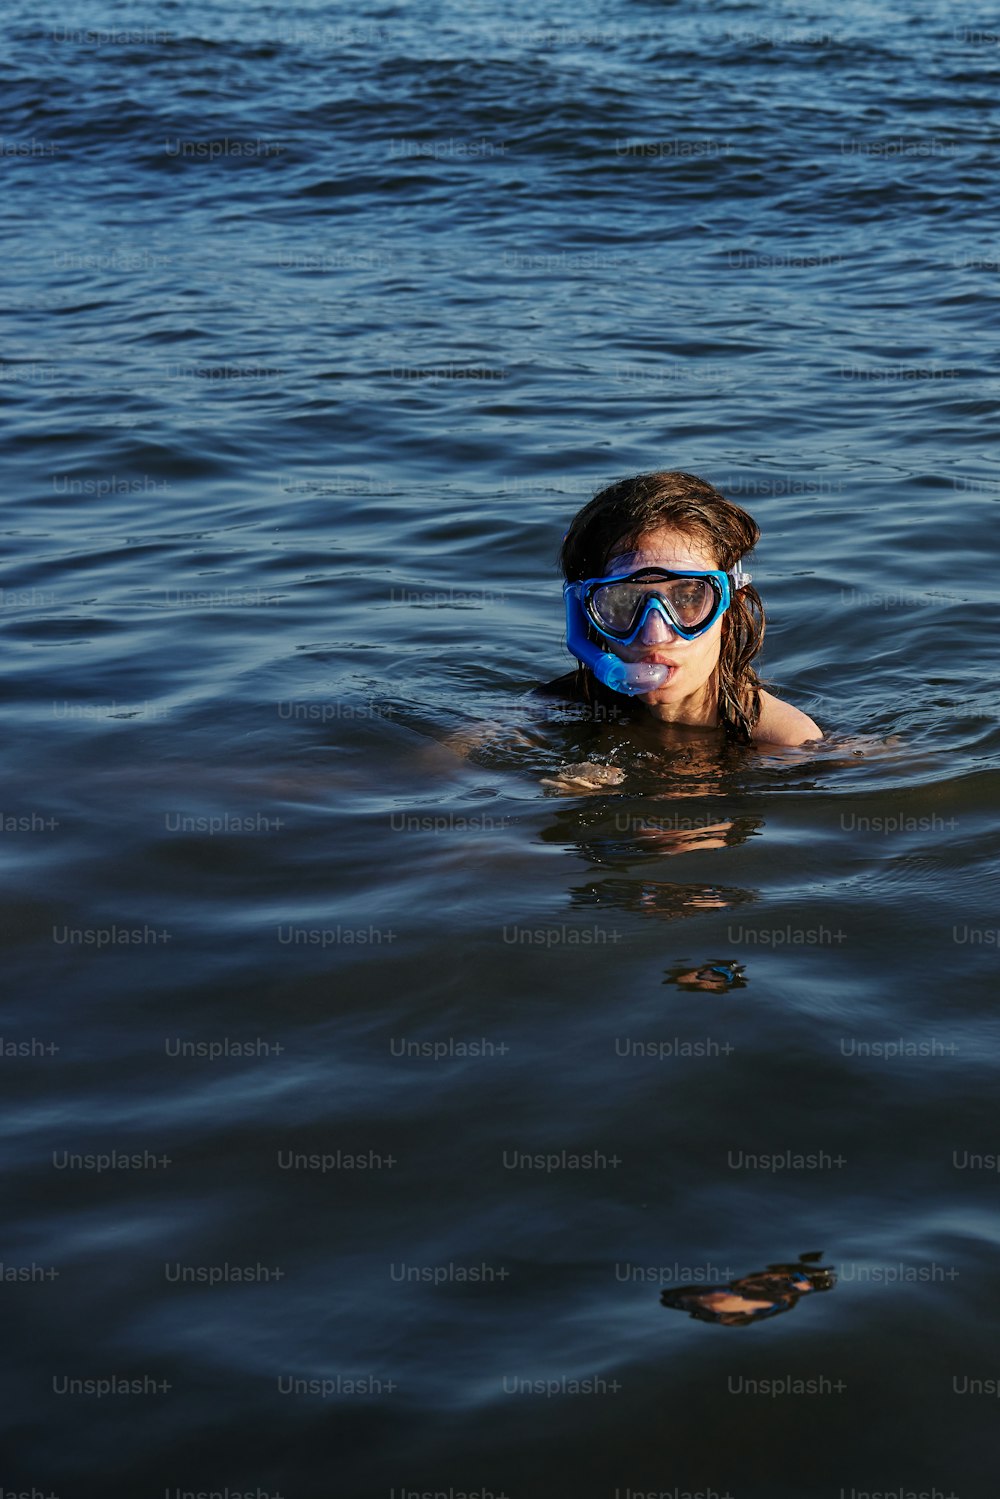 una persona che nuota nell'acqua con una maschera addosso